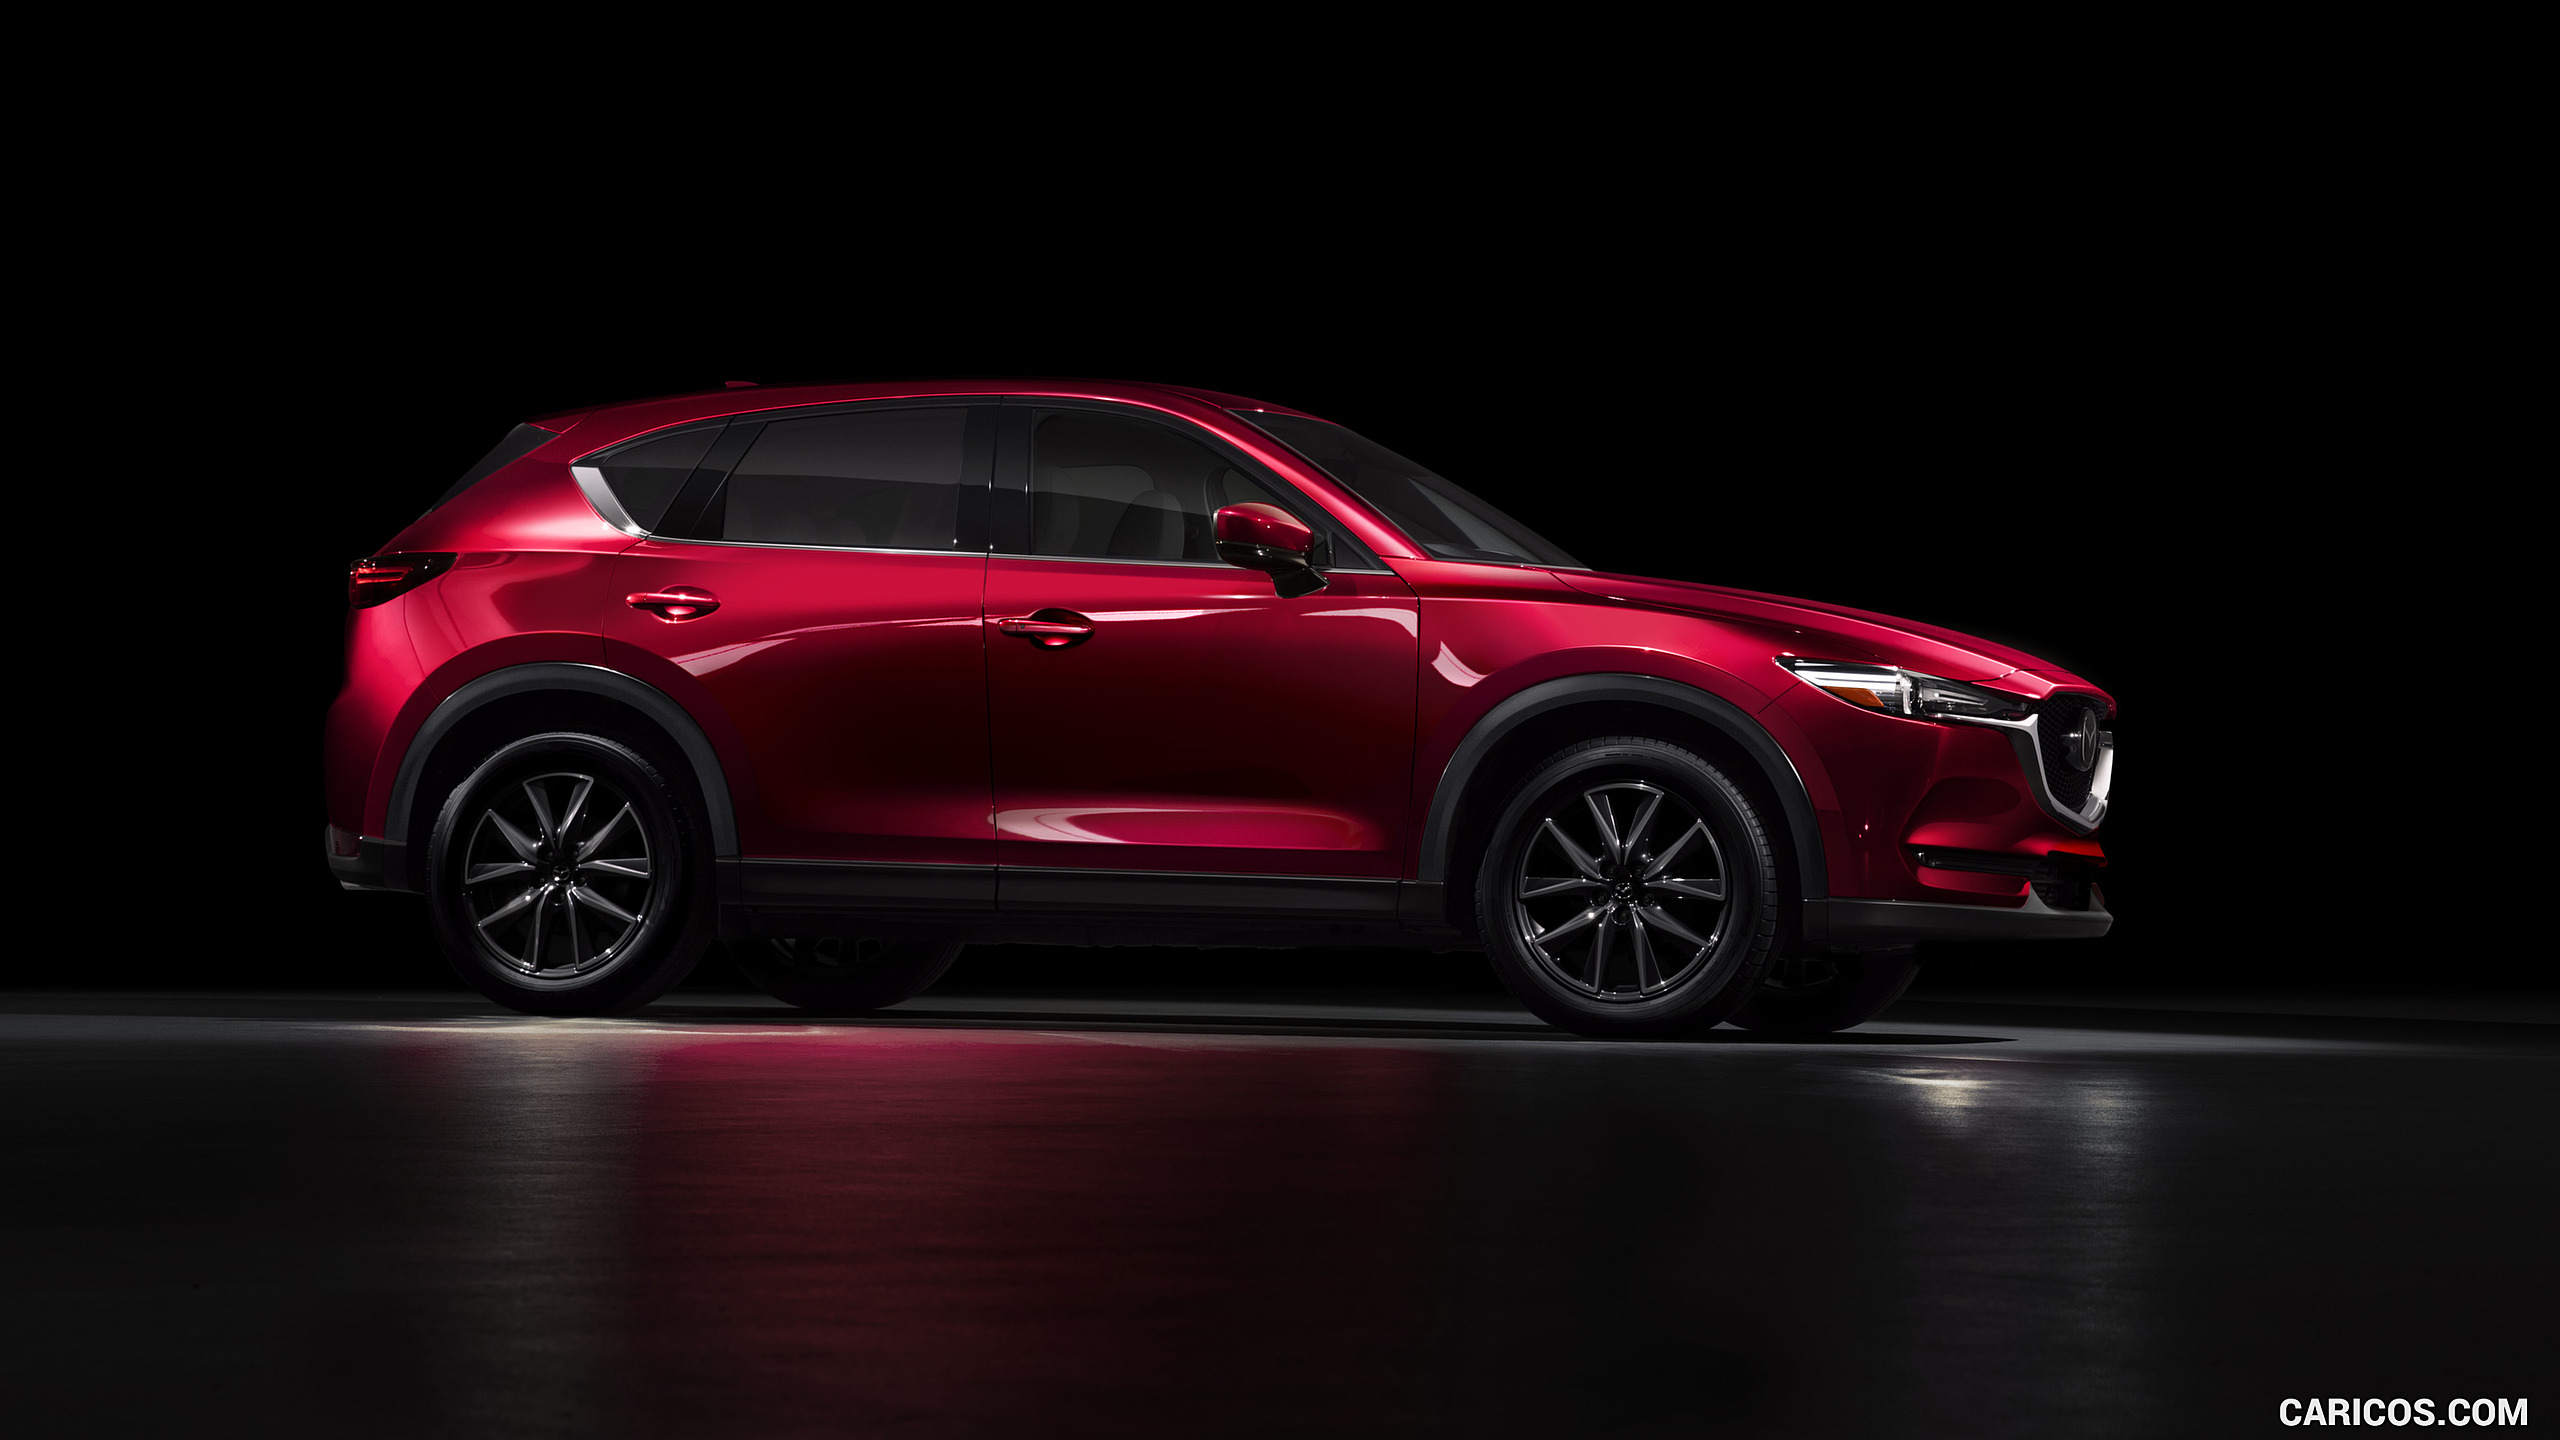 2017 Mazda CX-5 - Side, #31 of 42